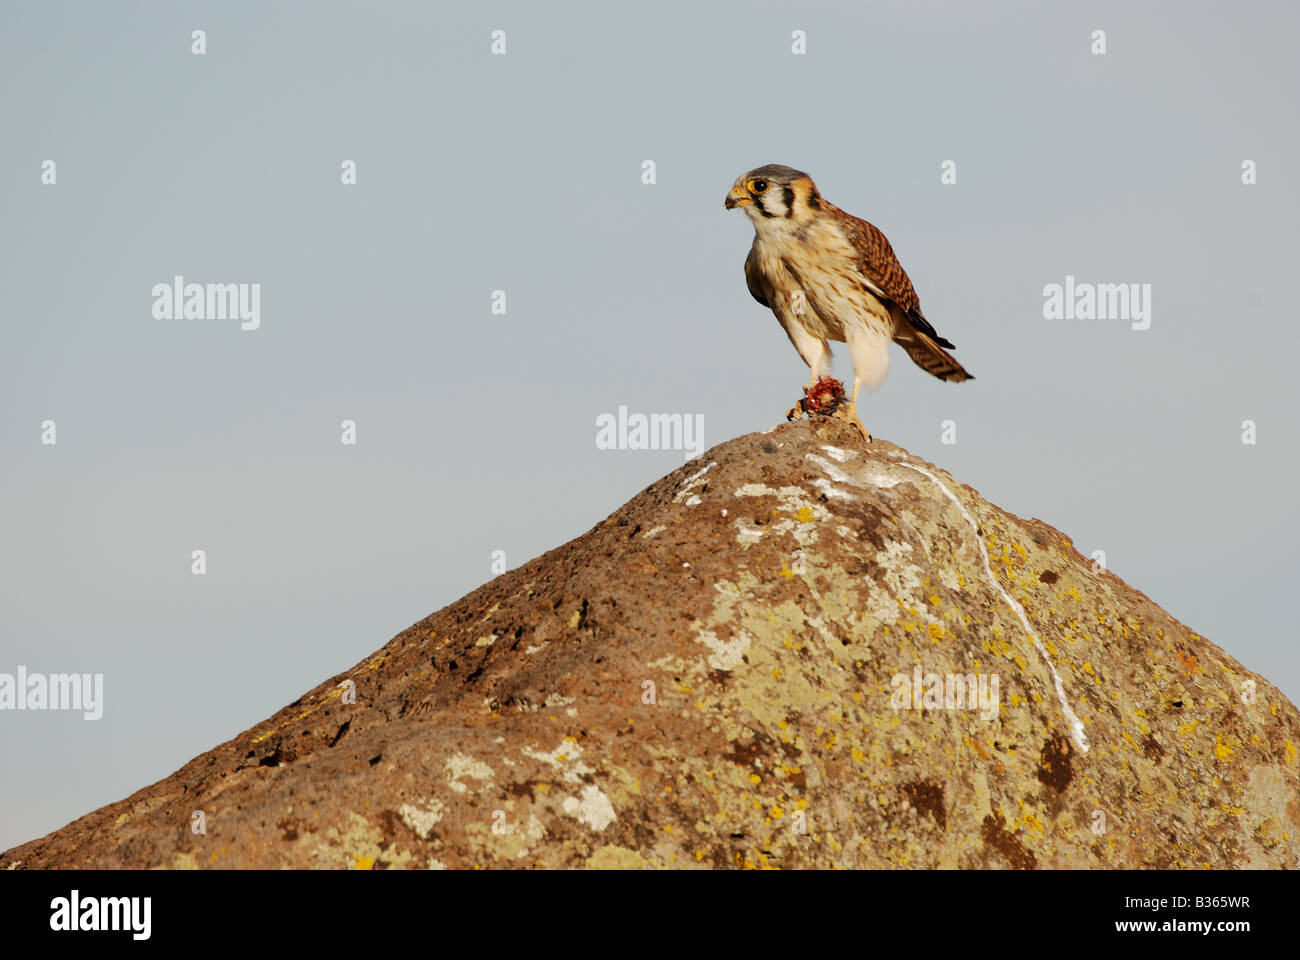 Peru, bird eating at ancient ruins at Sillustani Stock Photo